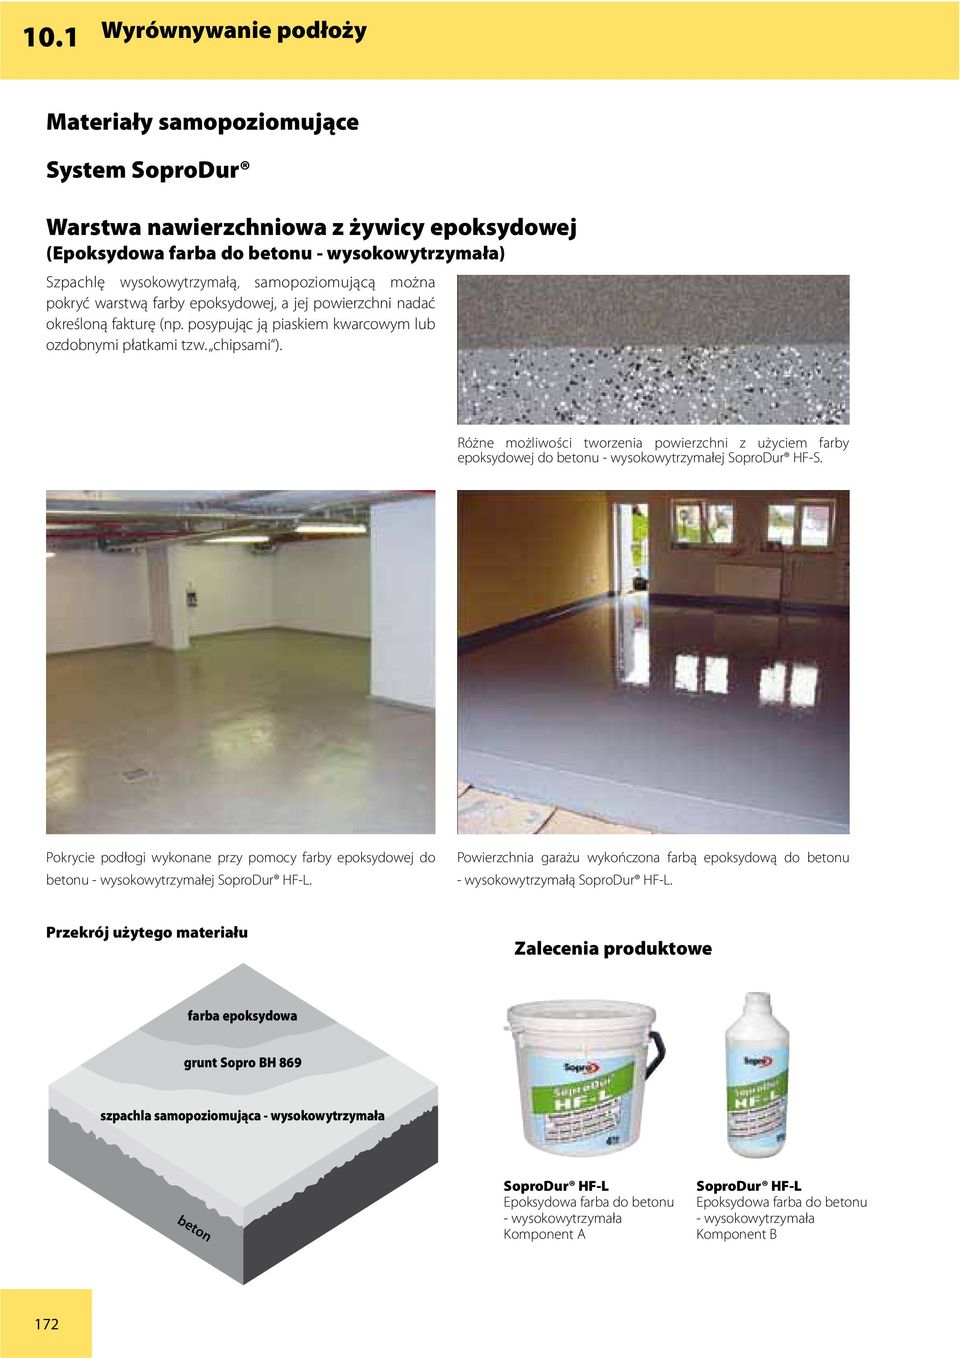 Różne możliwości tworzenia powierzchni z użyciem farby epoksydowej do betonu - wysokowytrzymałej SoproDur HF-S.